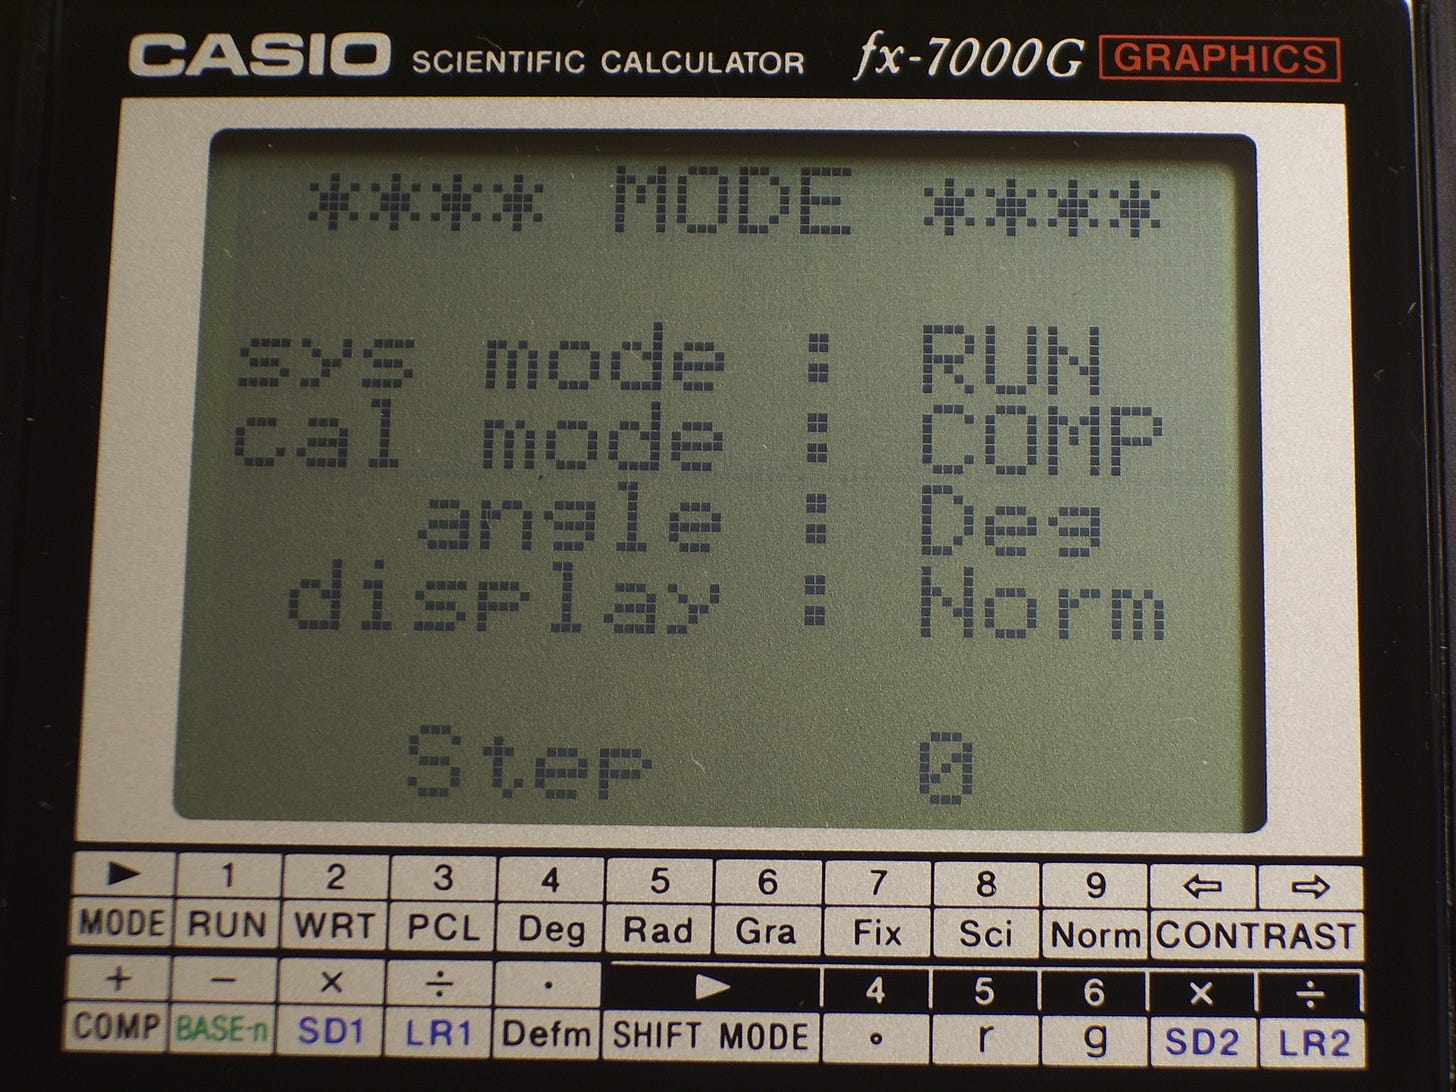 Mostrador de matriz de pontos da calculadora Casio fx-7000G.